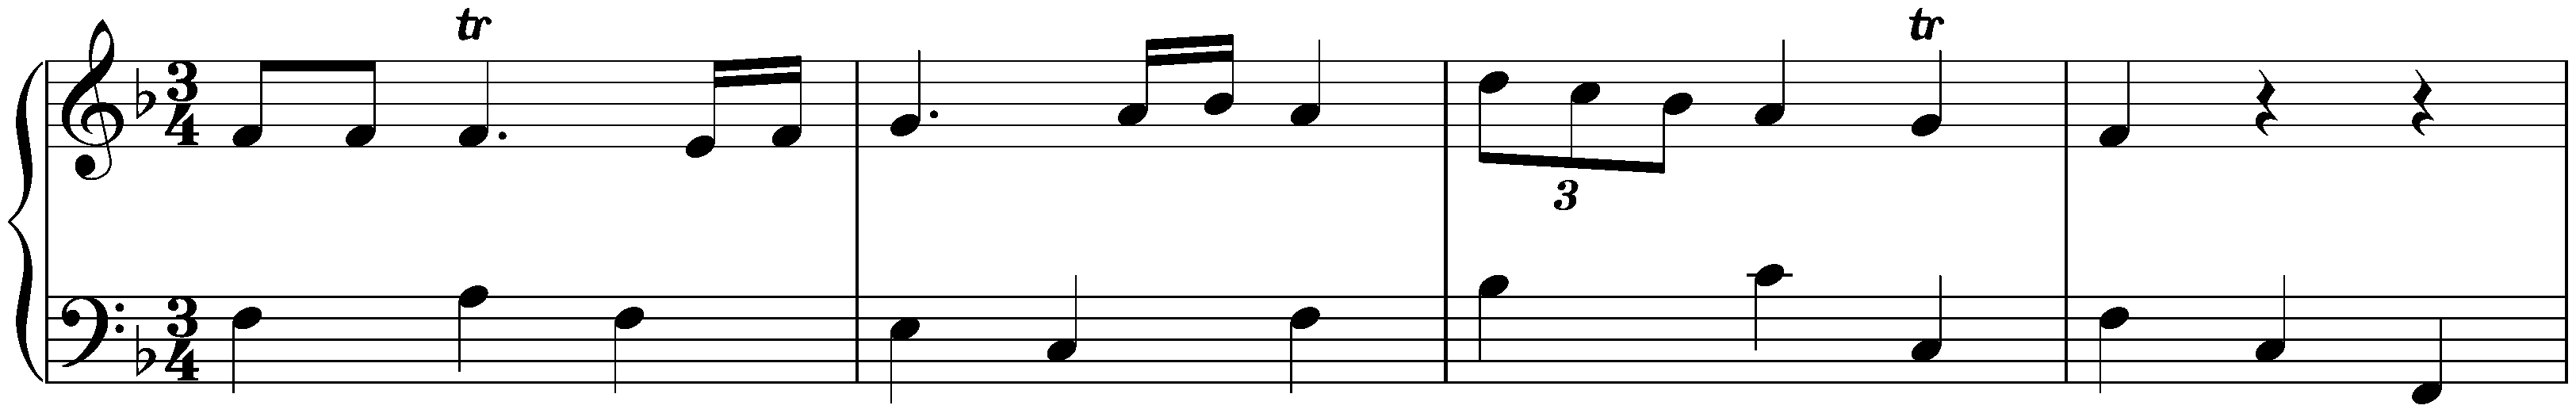 Notebook for Nannerl, KV 1–8; 49. Minuet in F major, KV 4